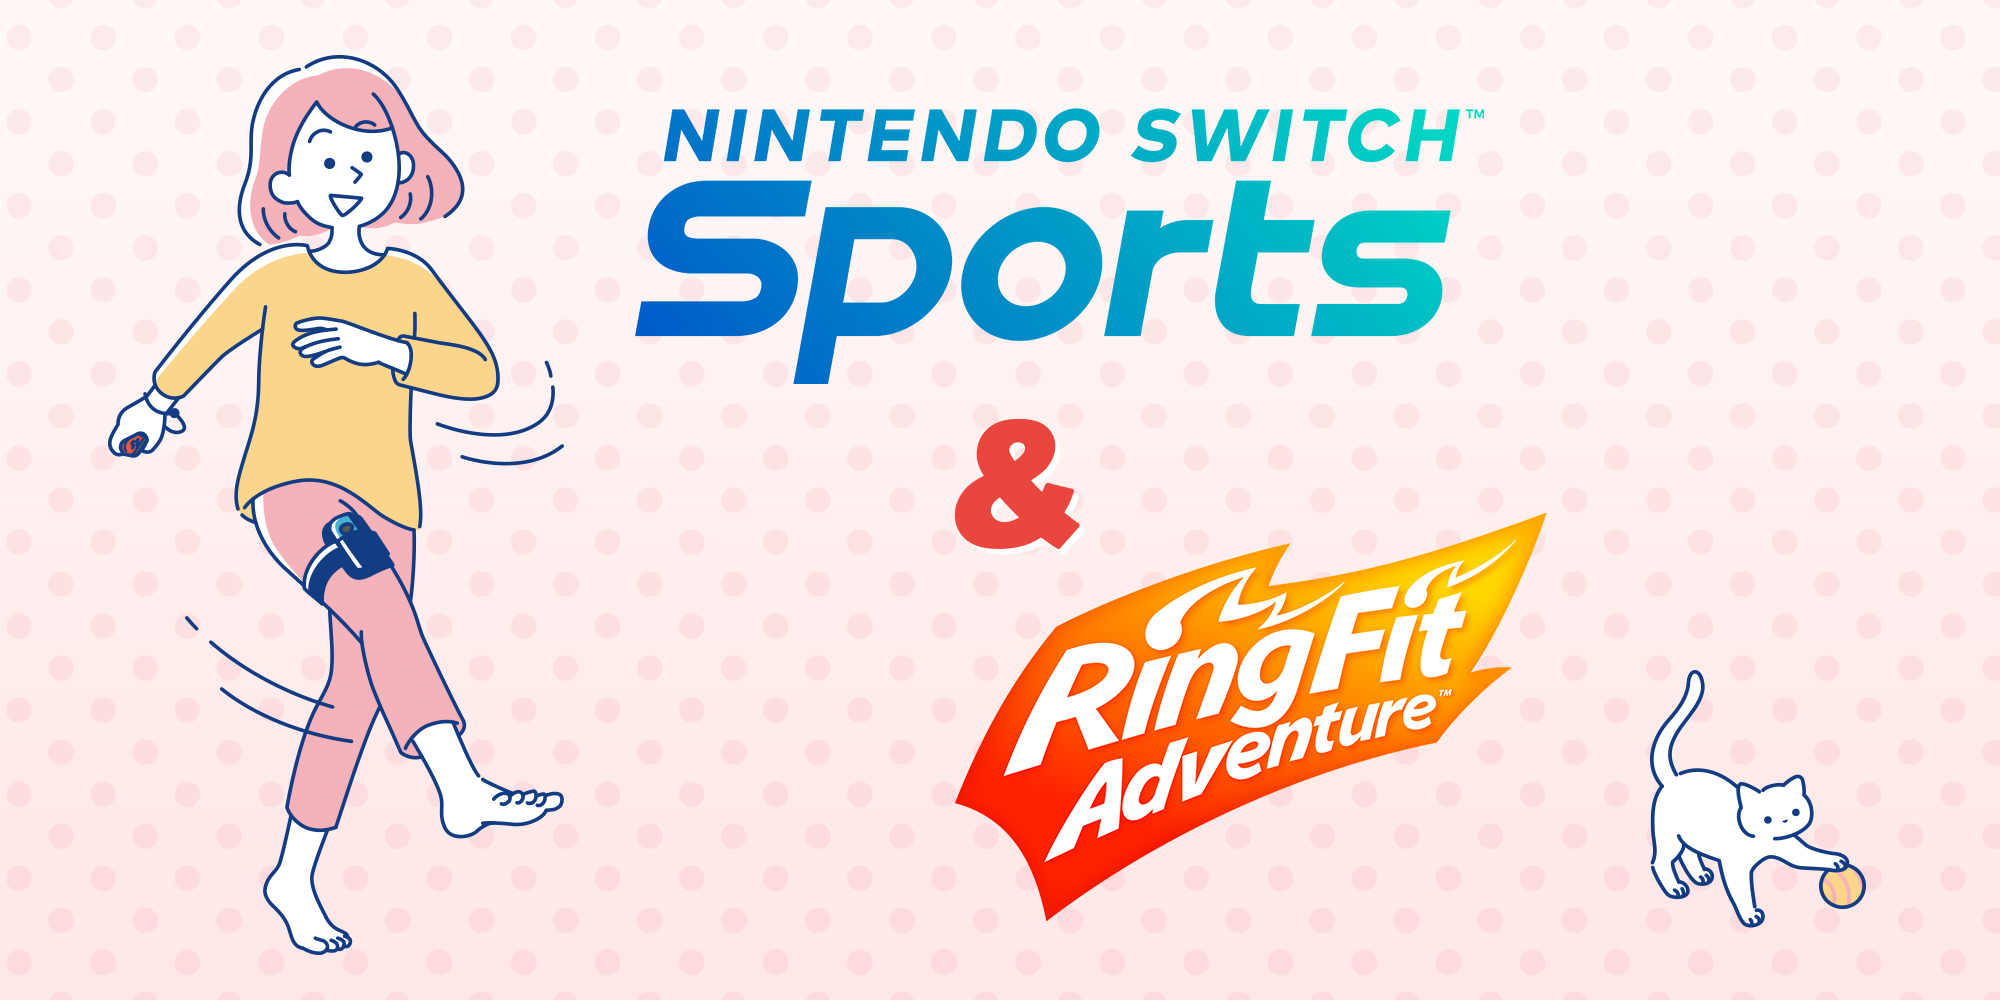 Arranca el año con energía y ponte en movimiento con Nintendo Switch Sports y Ring Fit Adventure